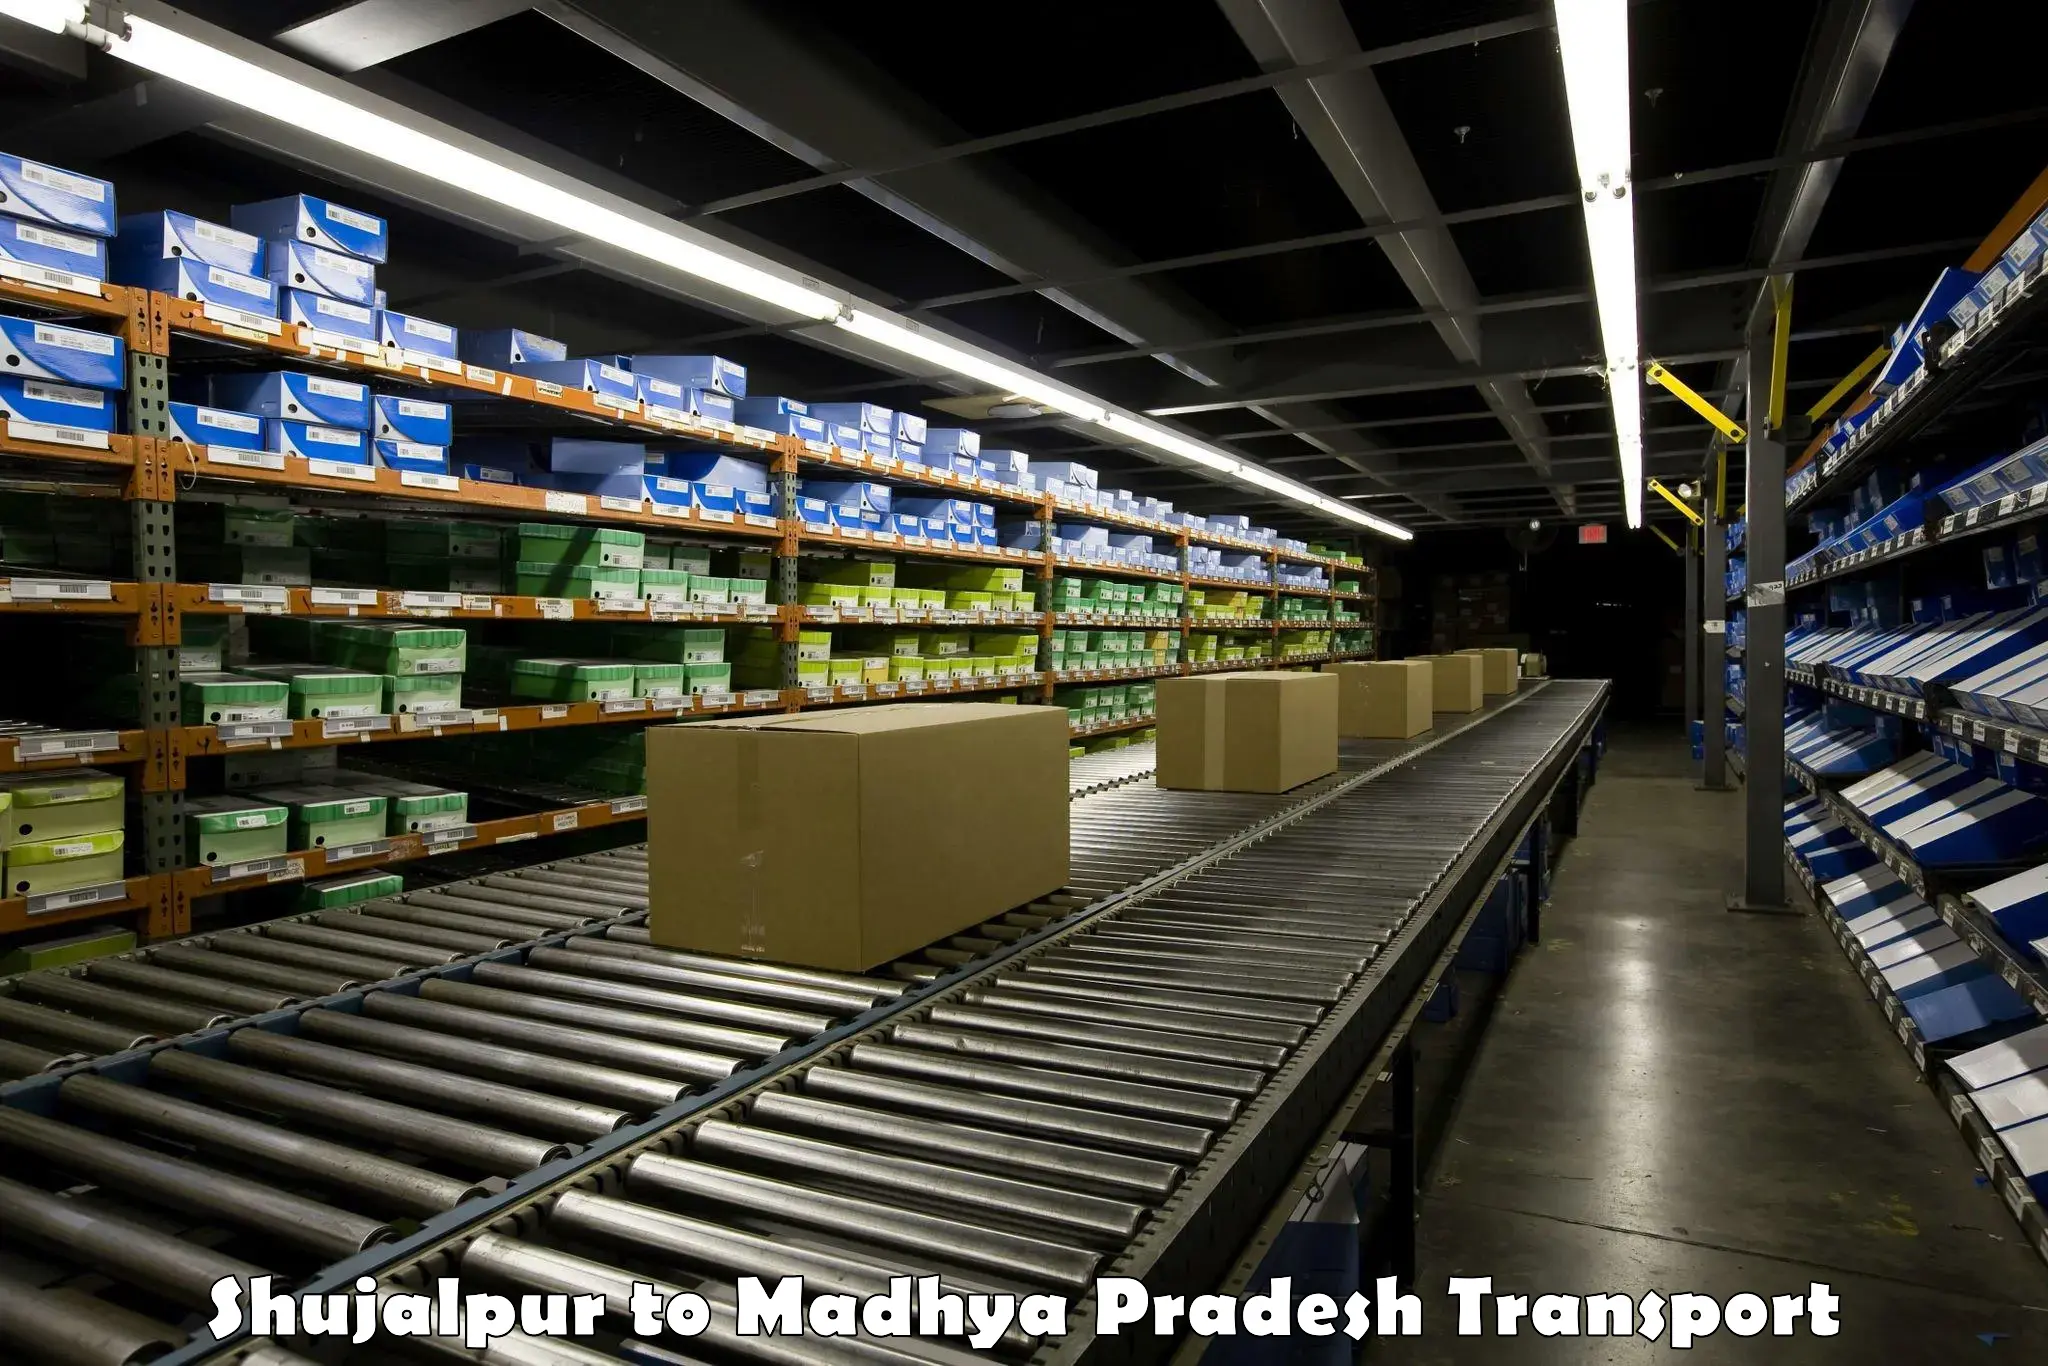 Goods delivery service Shujalpur to Madhya Pradesh